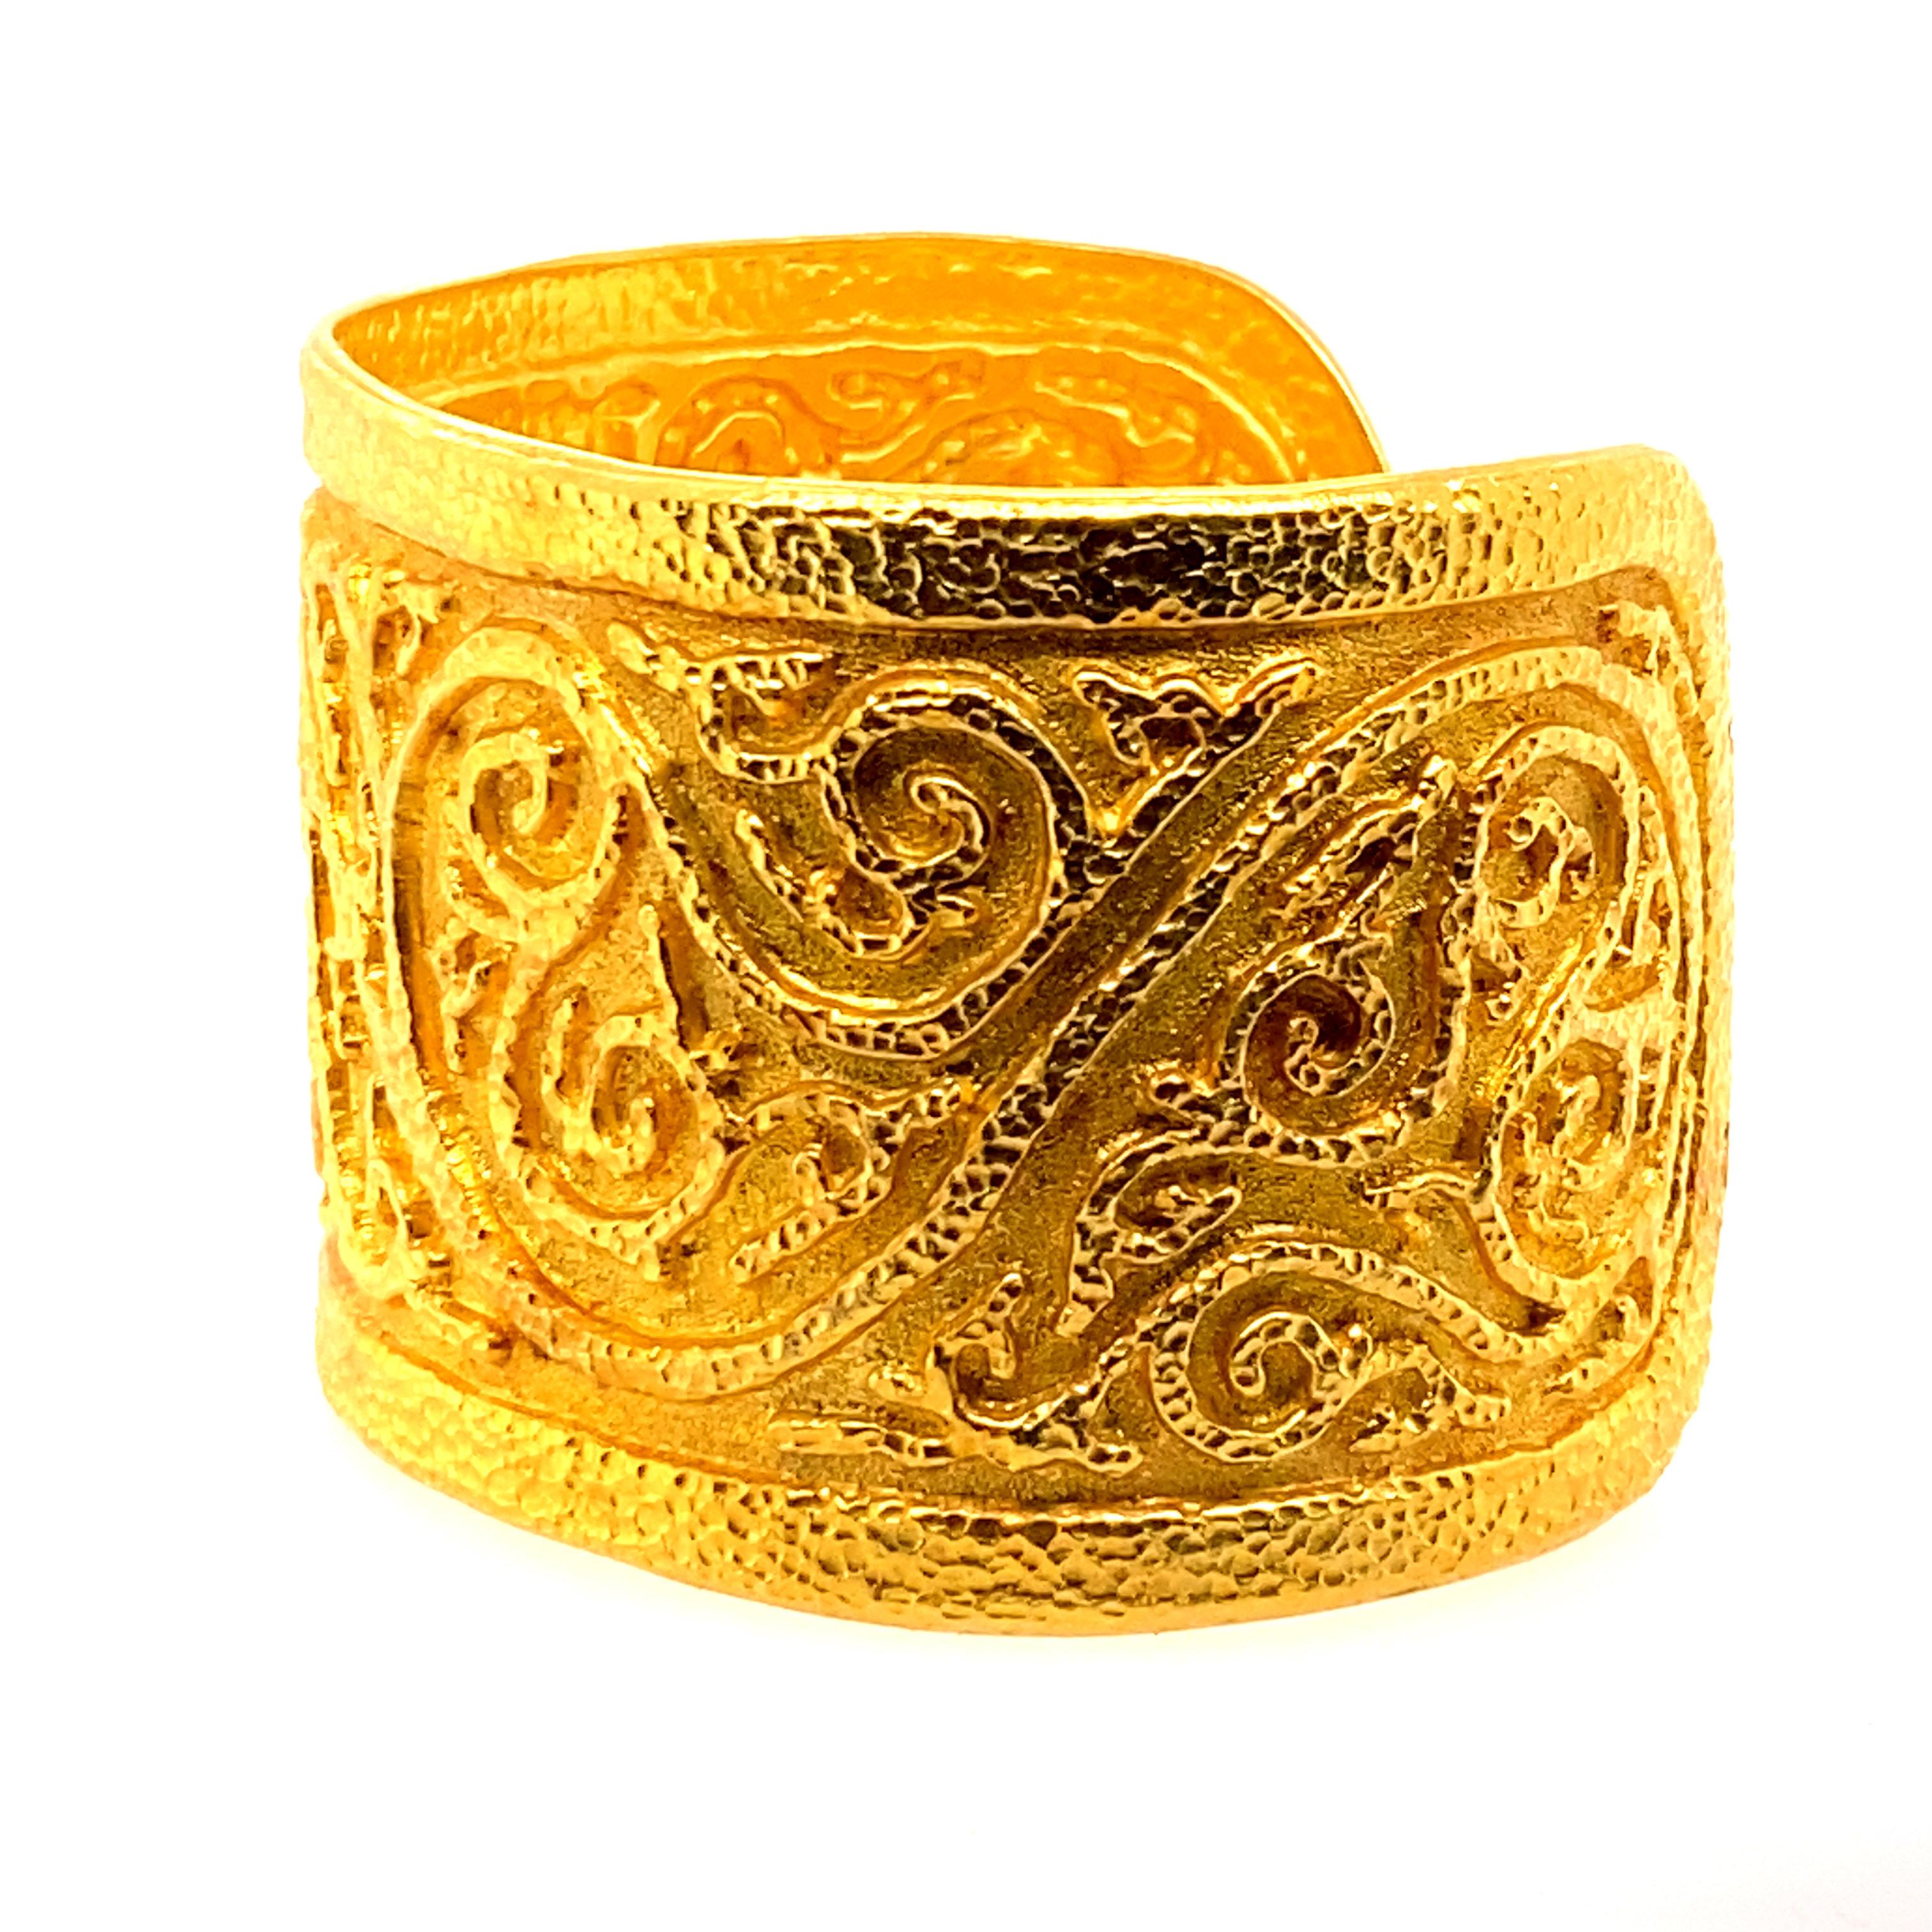 22k gold bracelet